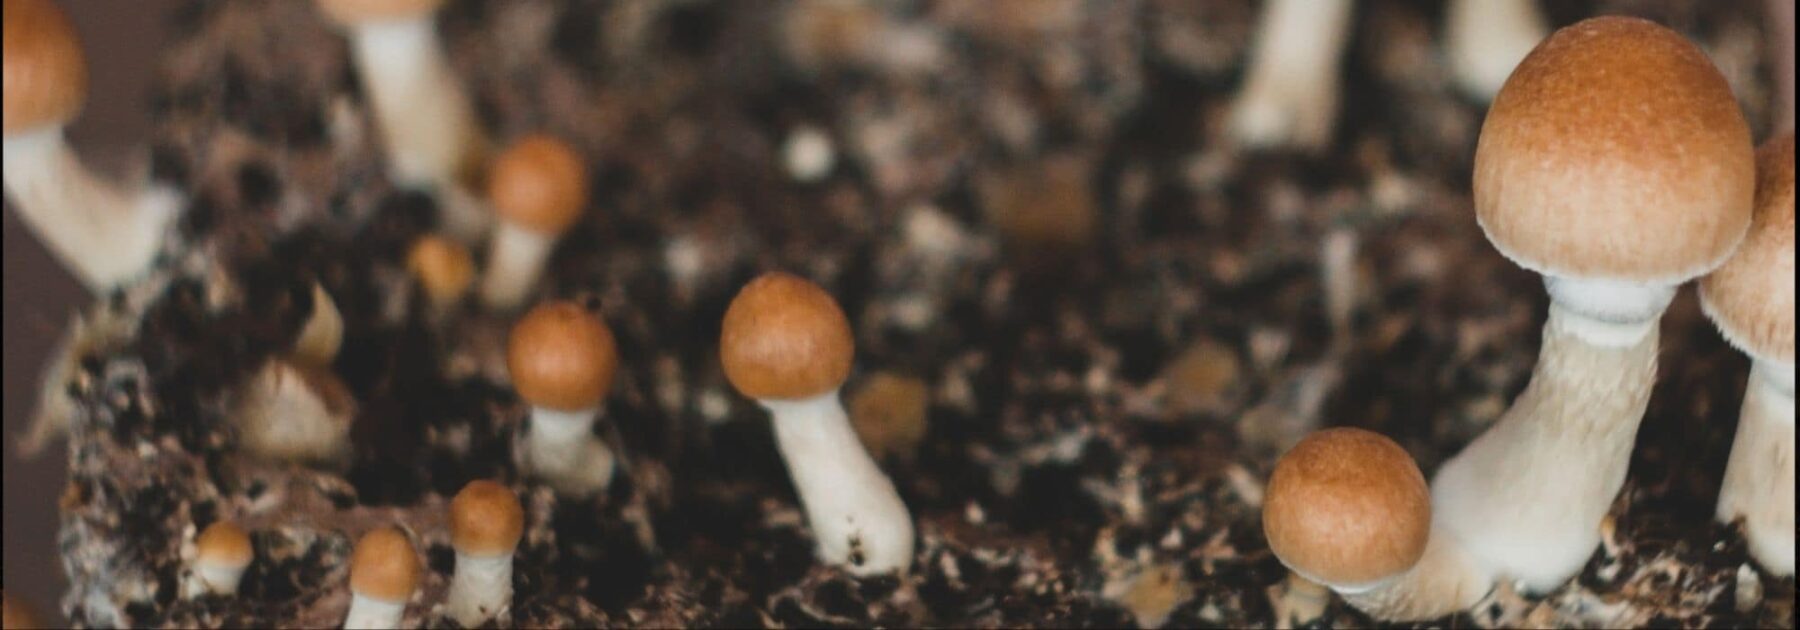 Comment cultiver des champignons facilement?